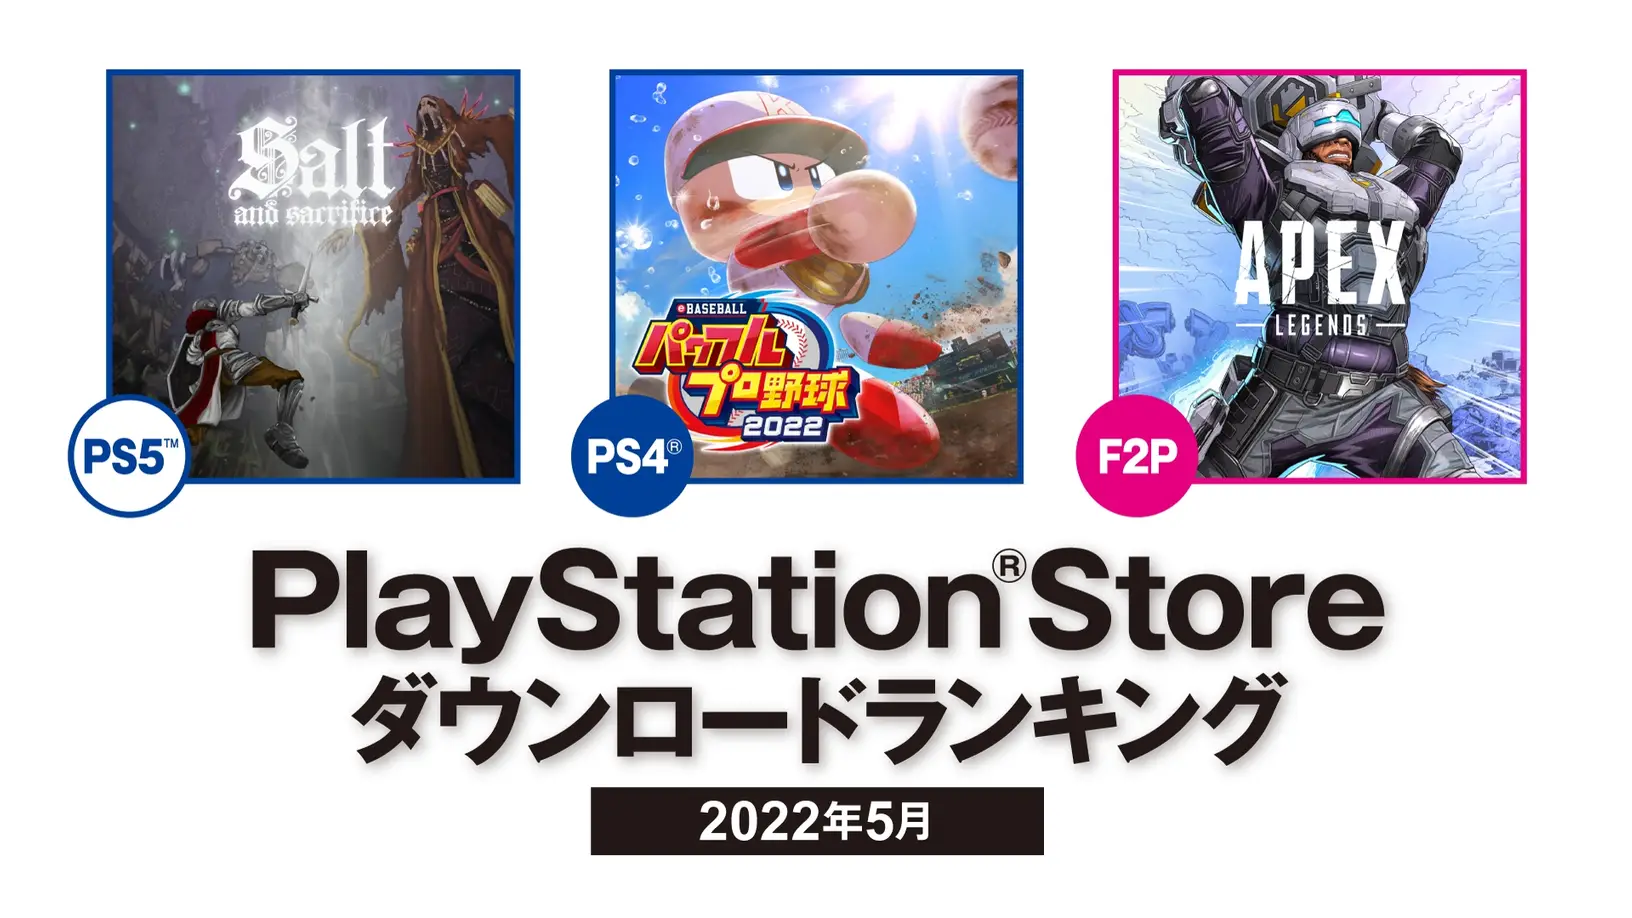 索尼公布2022年5月 日本北美地区PS Store下载排名